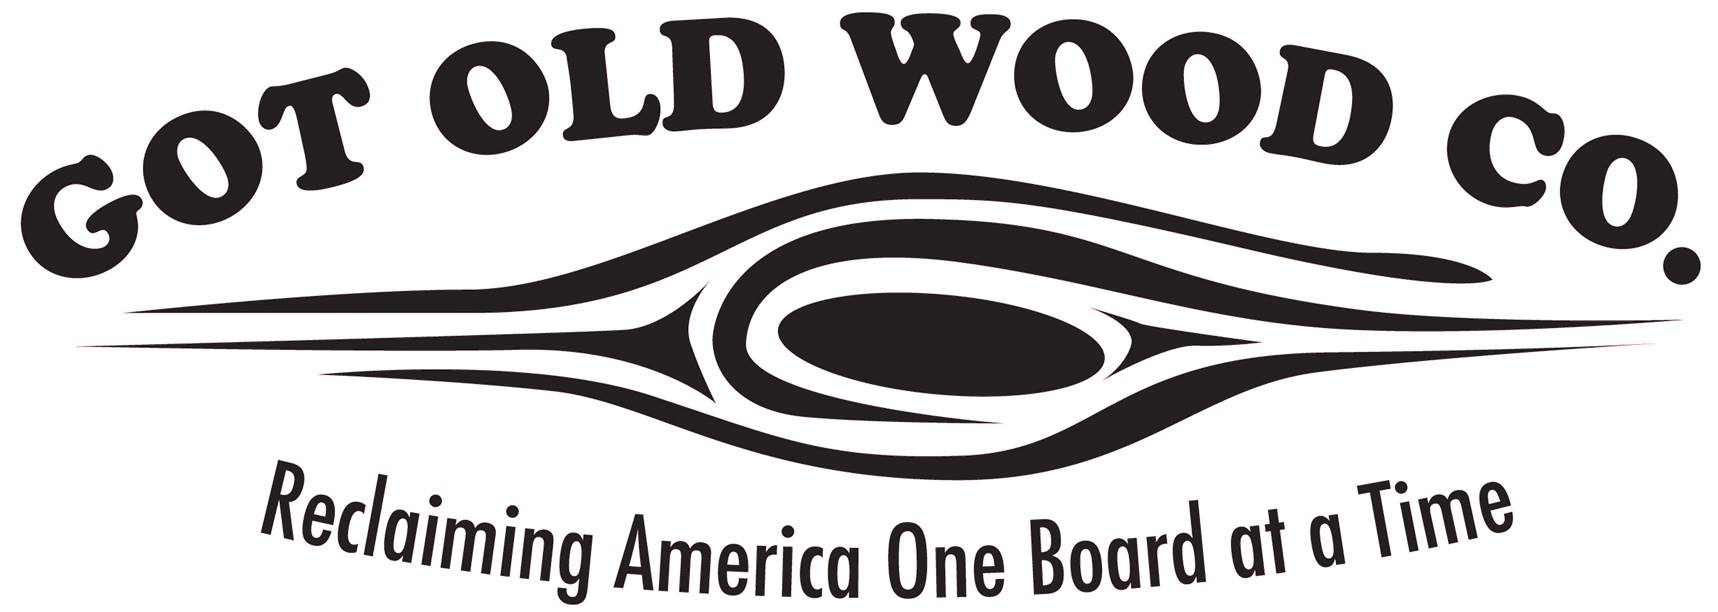 Got Old Wood Co